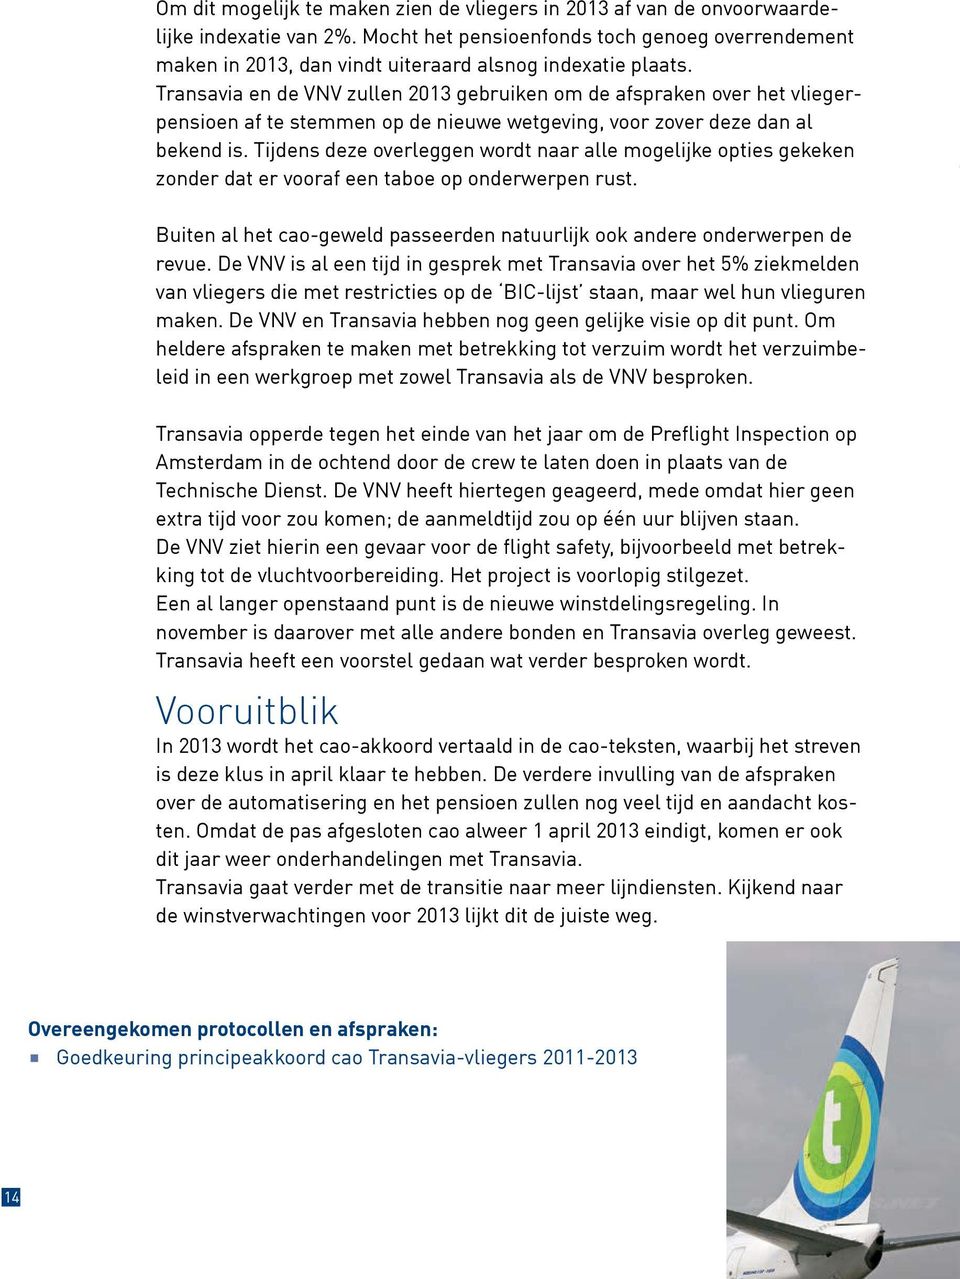 Transavia en de VNV zullen 2013 gebruiken om de afspraken over het vliegerpensioen af te stemmen op de nieuwe wetgeving, voor zover deze dan al bekend is.